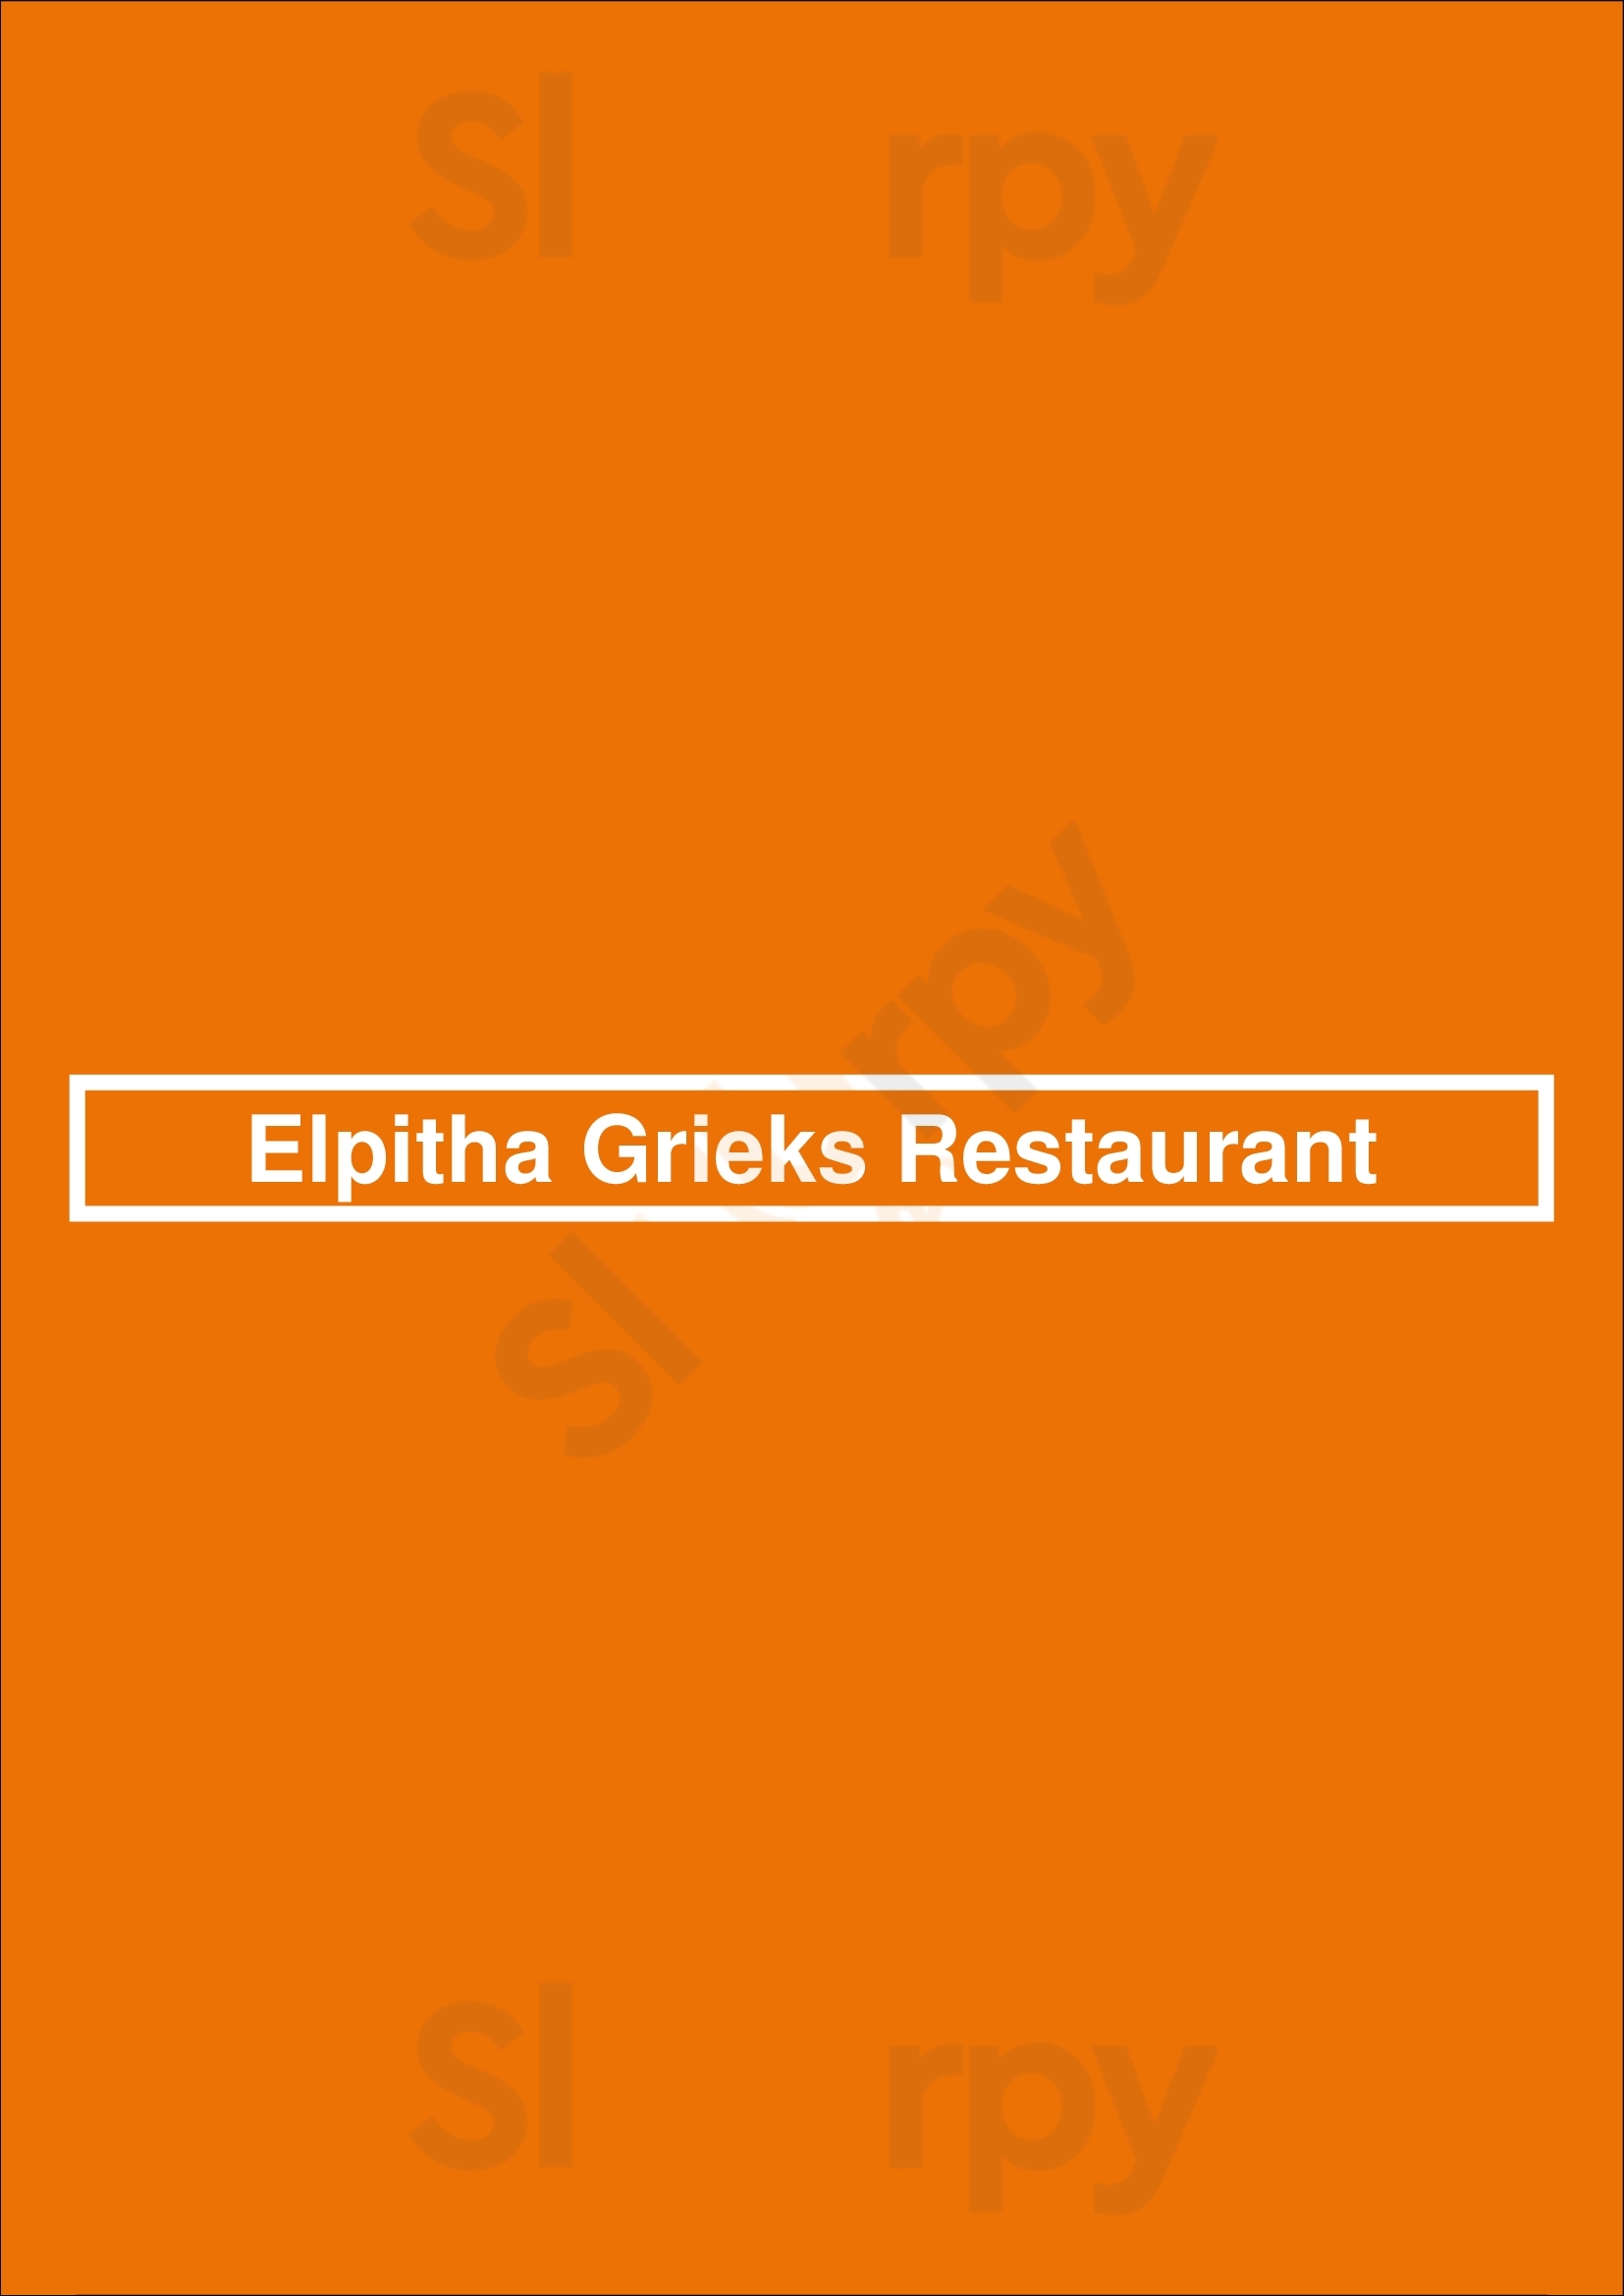 Elpitha Grieks Restaurant Woerden Menu - 1